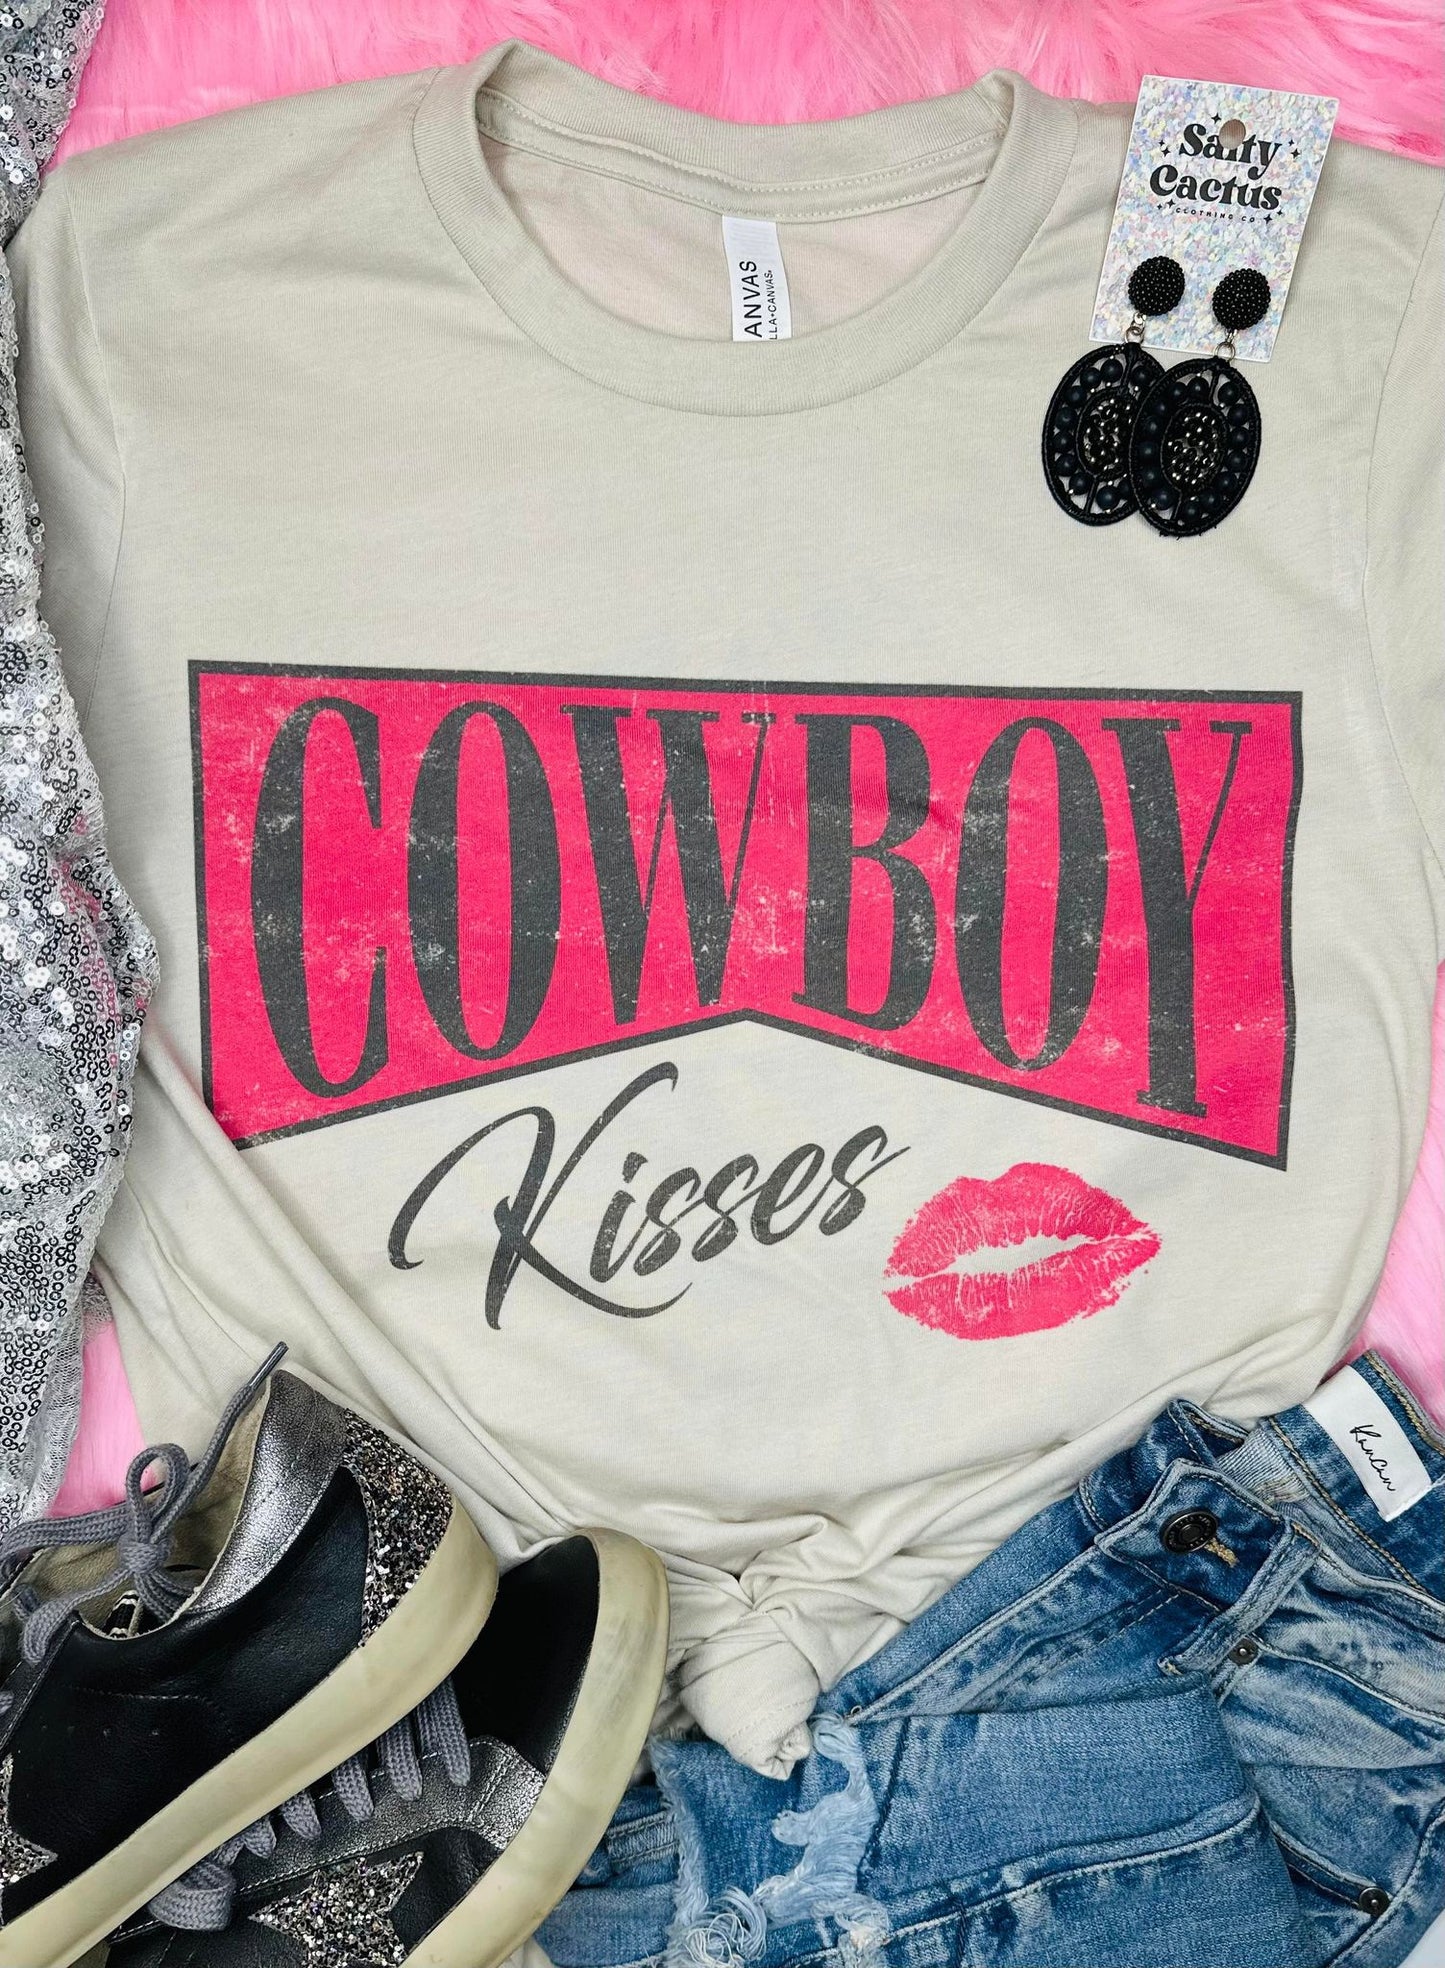 Cowboy Kisses Tan Tee